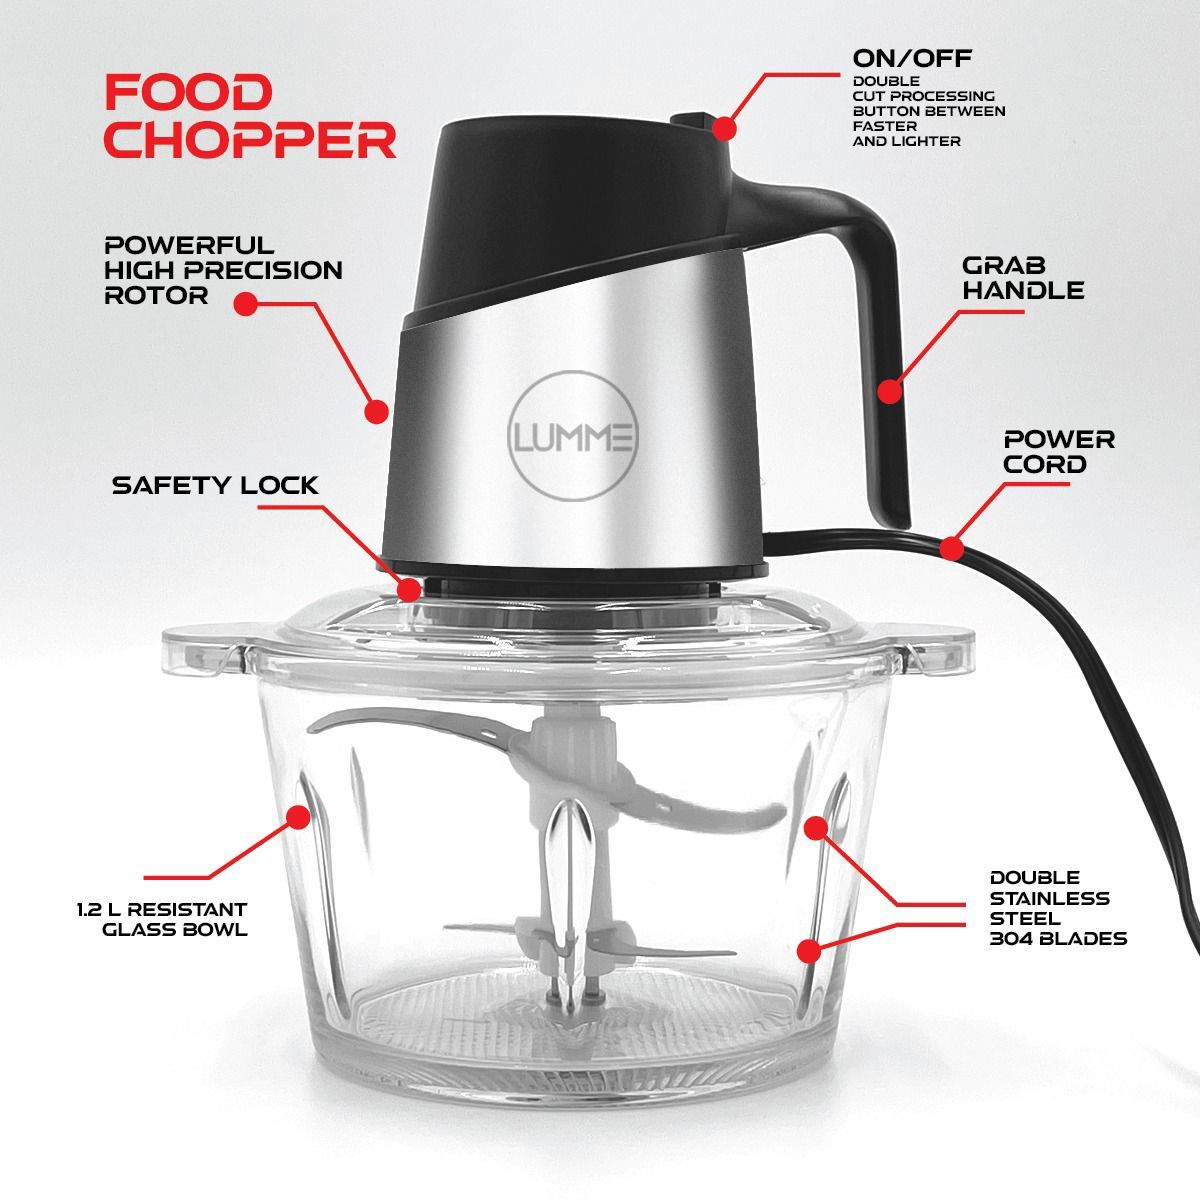 Lumme 5 Cups 400-Watt Stainless Steel Mini Food Chopper in the